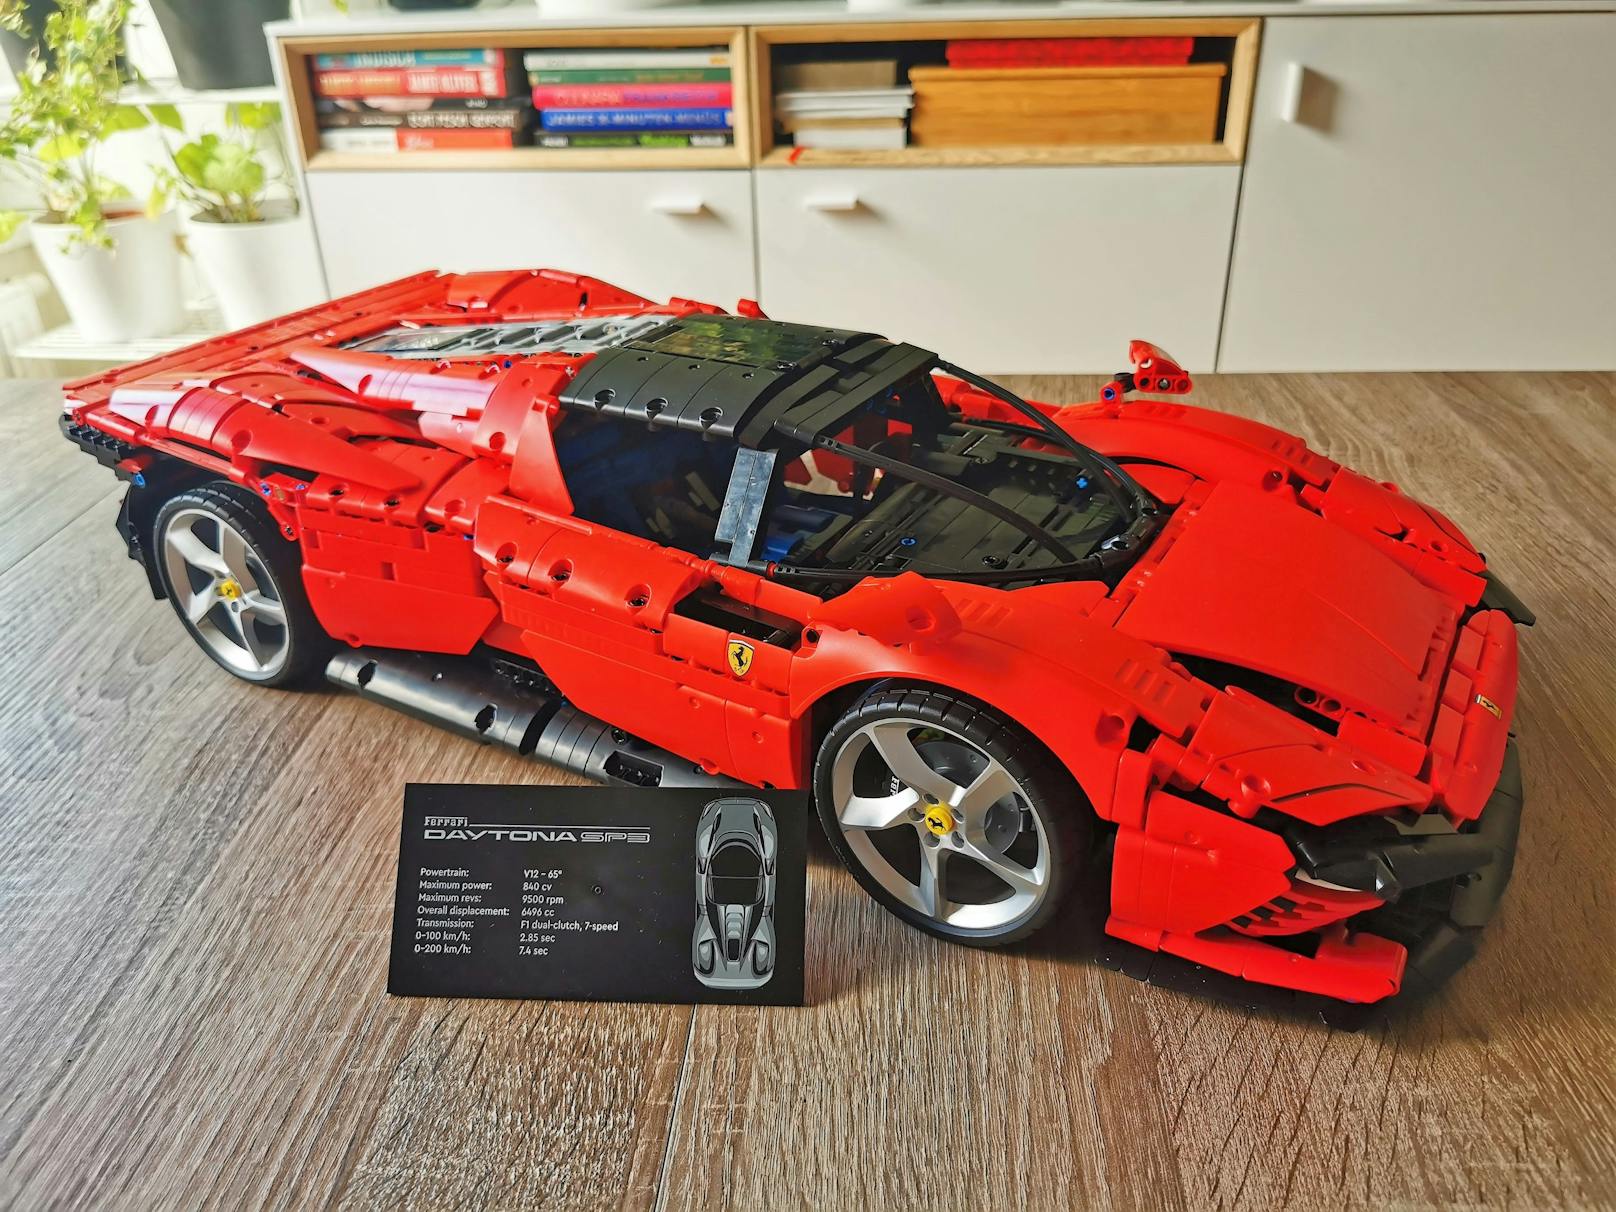 LEGO Ferrari Daytona SP3 – zwei nach unserem Geschmack kleine Mankos bietet das Edel-Modell am Ende.